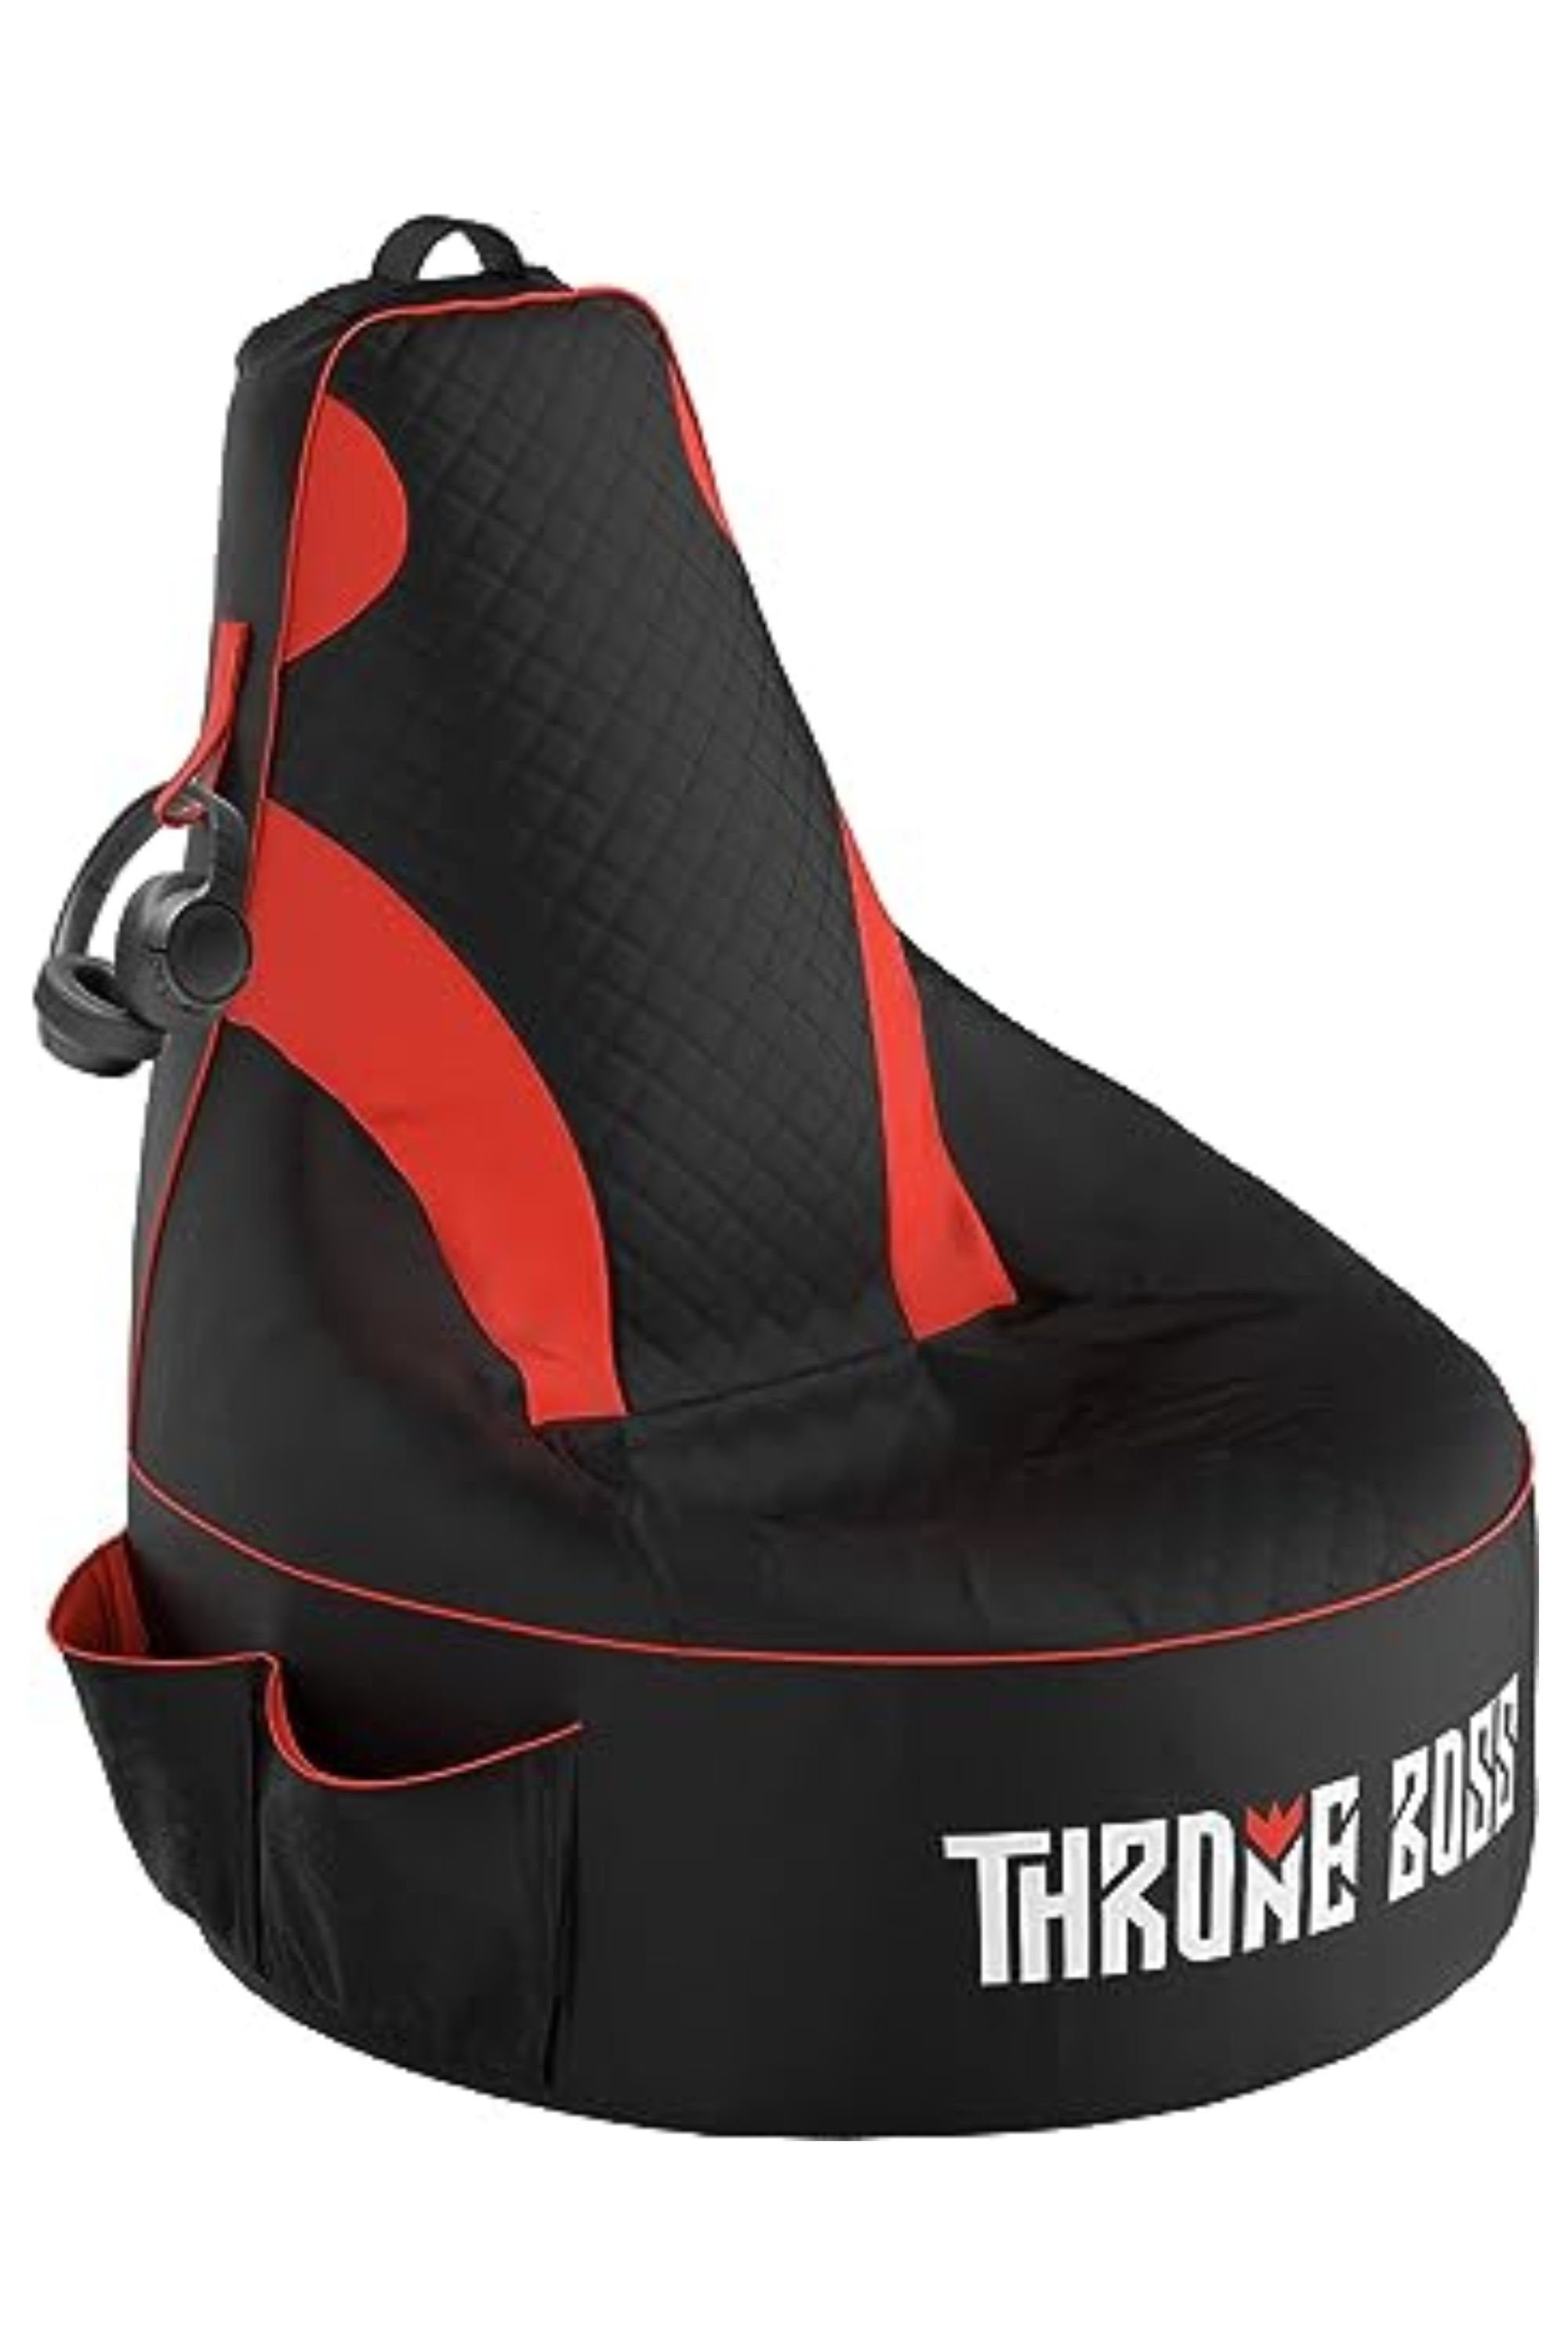 Throne Boss Gaming Bean Bag Chair 